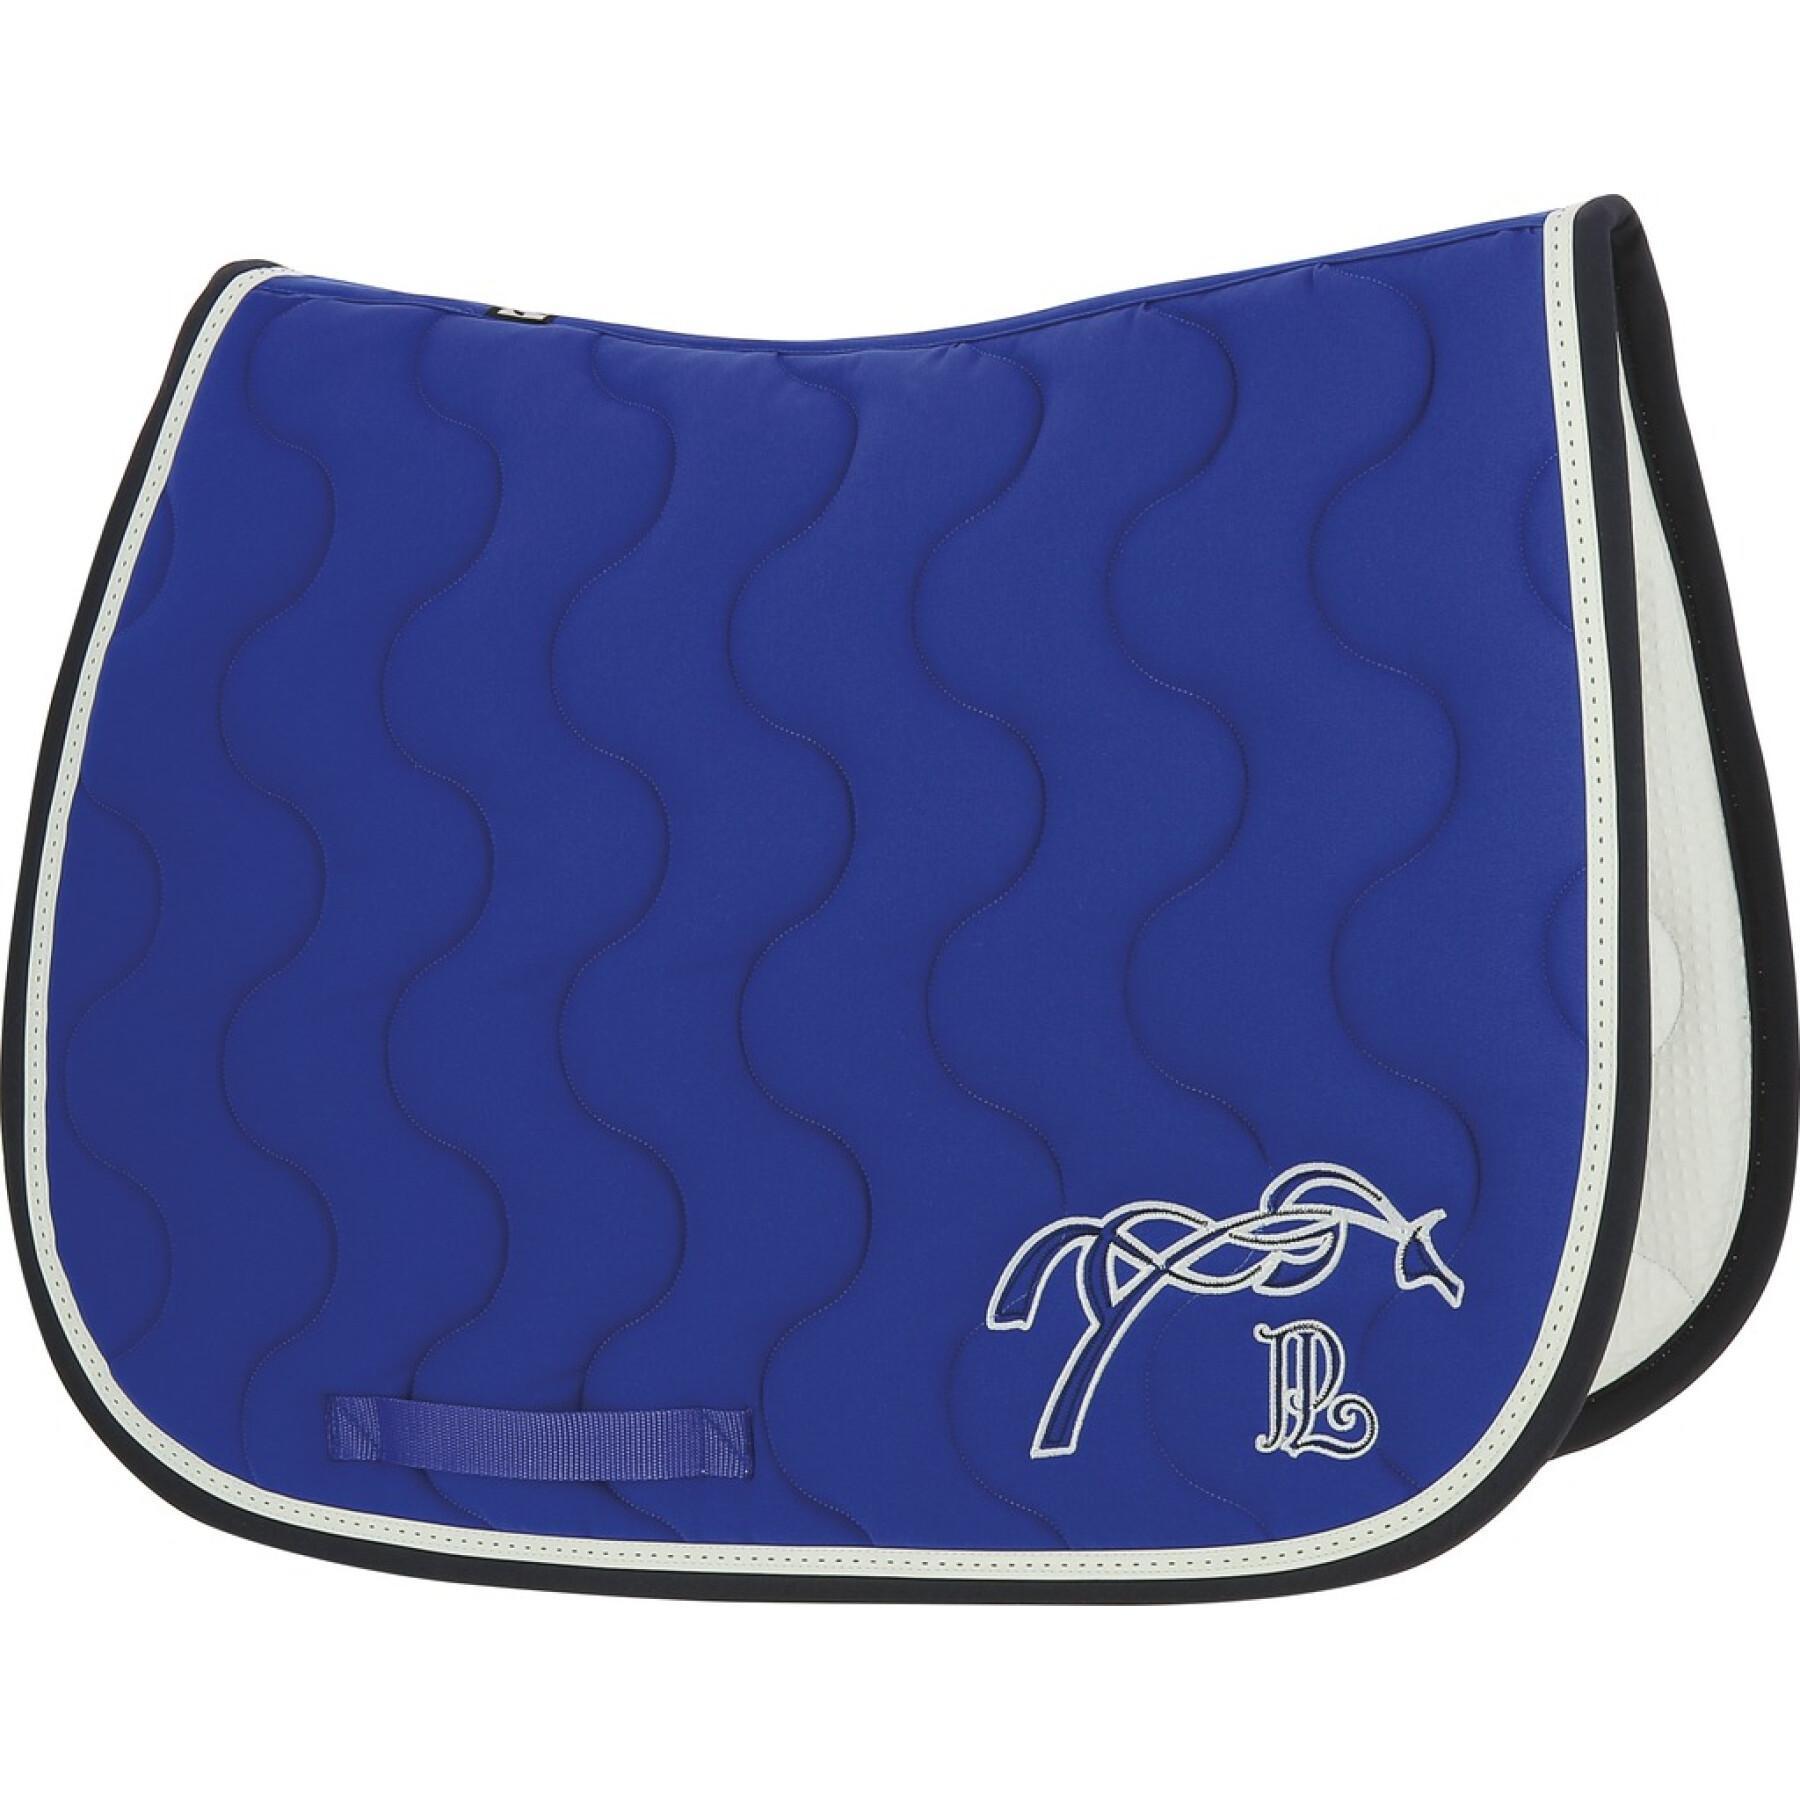 Saddle pad for horses Pénélope classique